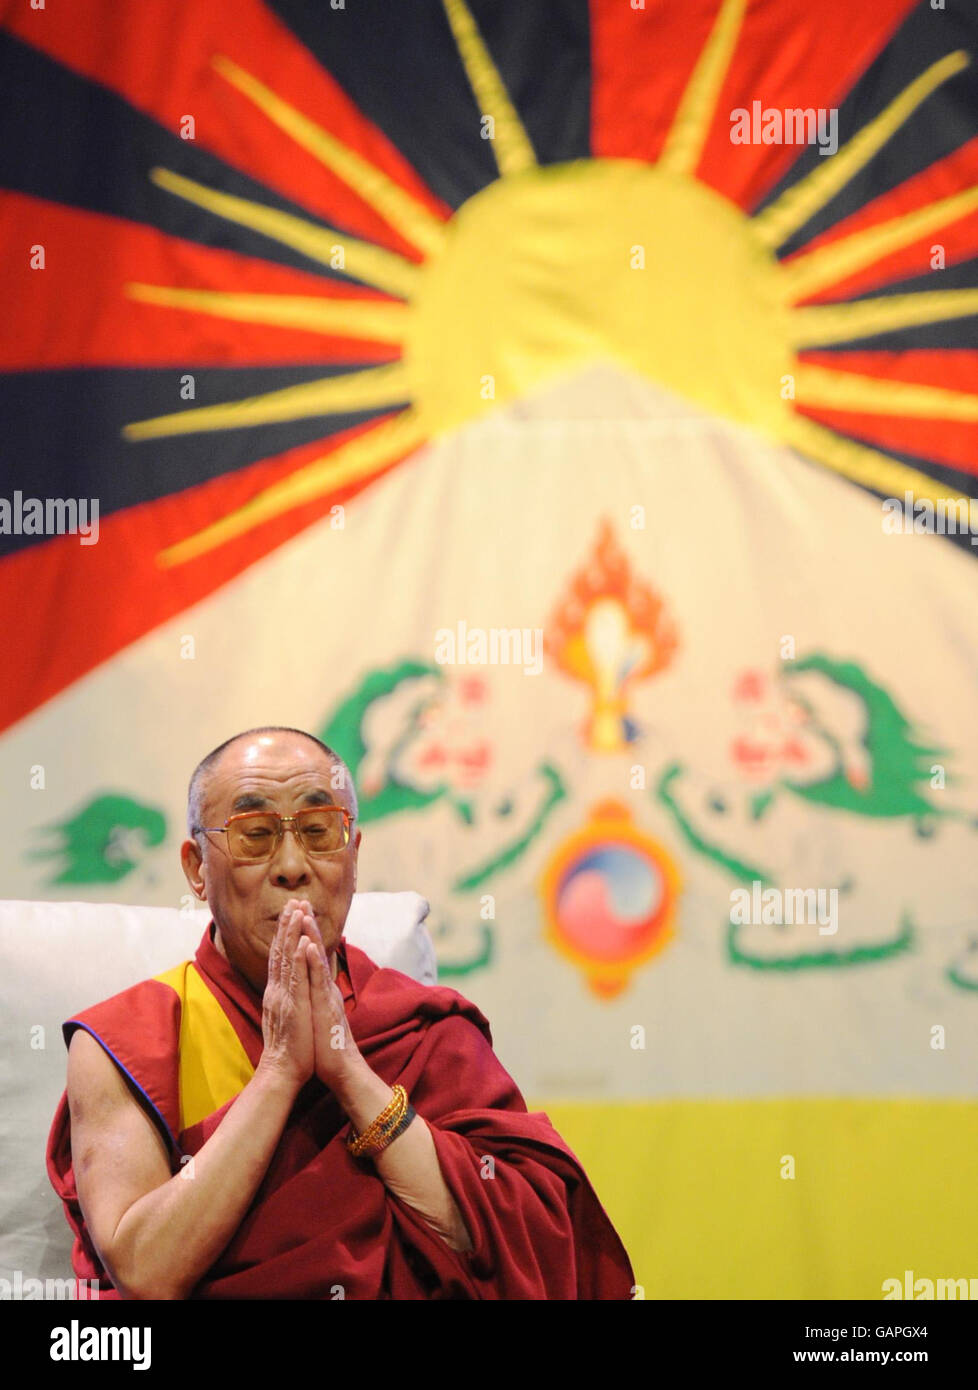 Der Dalai Lama in der Royal Albert Hall in London, wo er vor einer Audienz sprach. Stockfoto